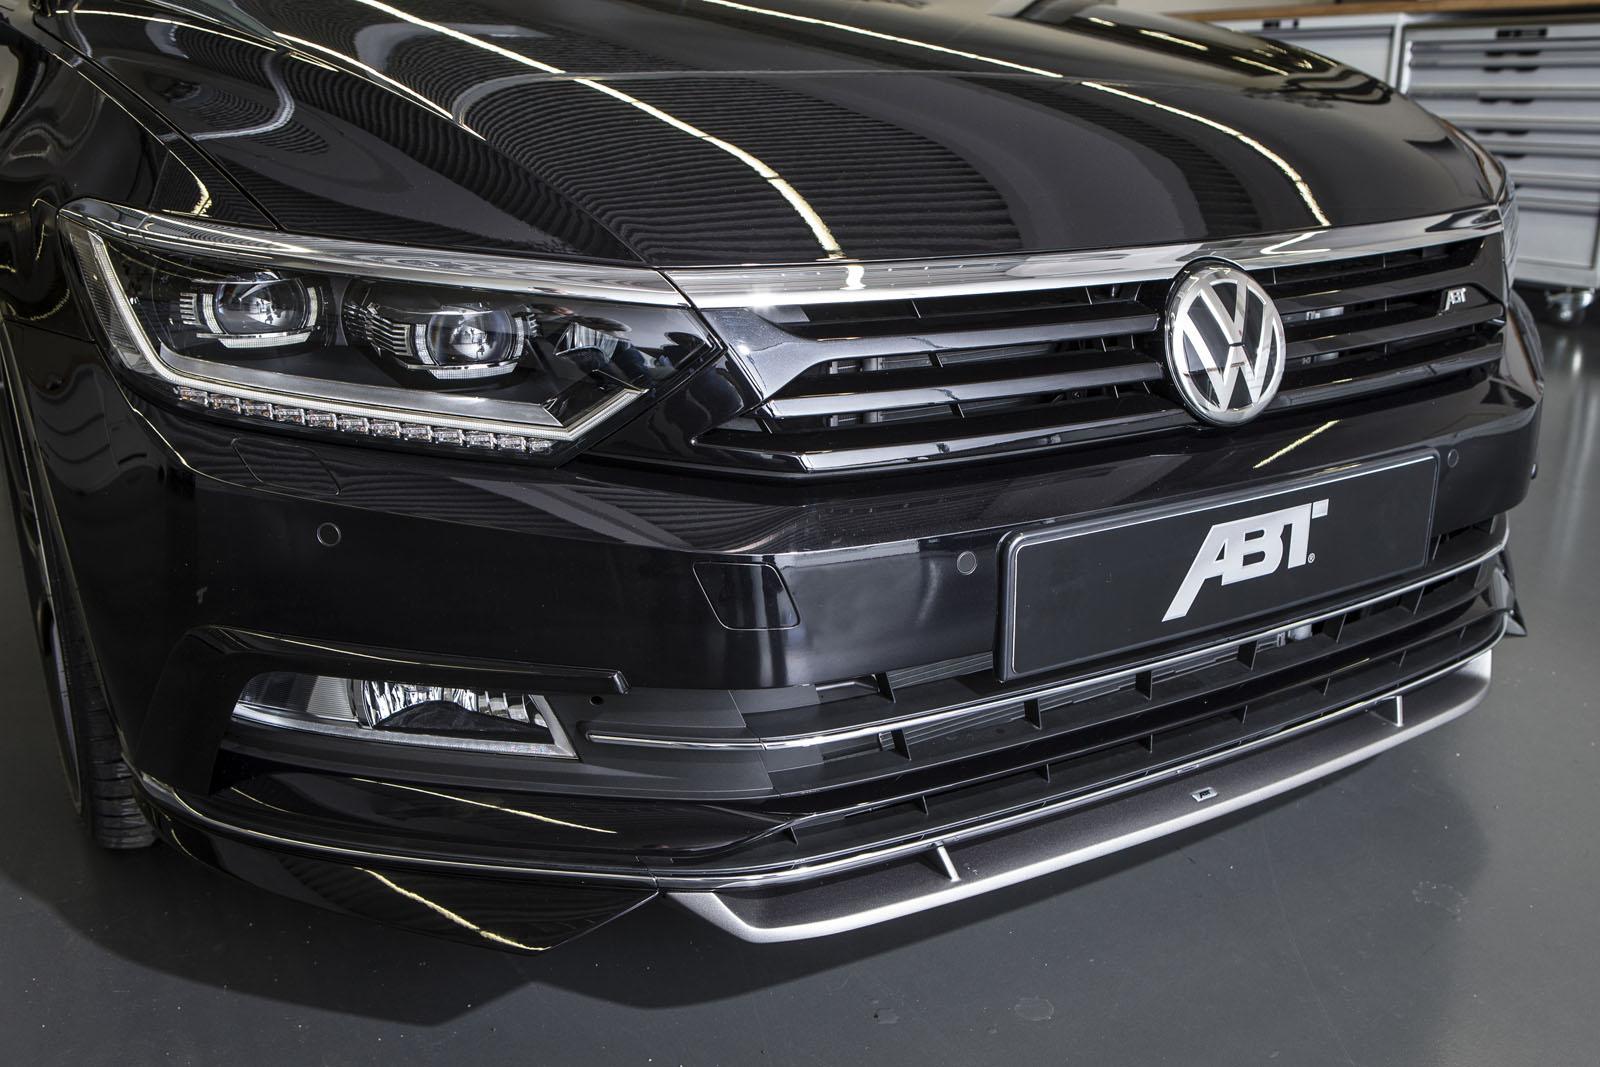 2015 Volkswagen Passat 2.0 BiTDI Tuned to 280 HP by ABT Sportsline -  autoevolution